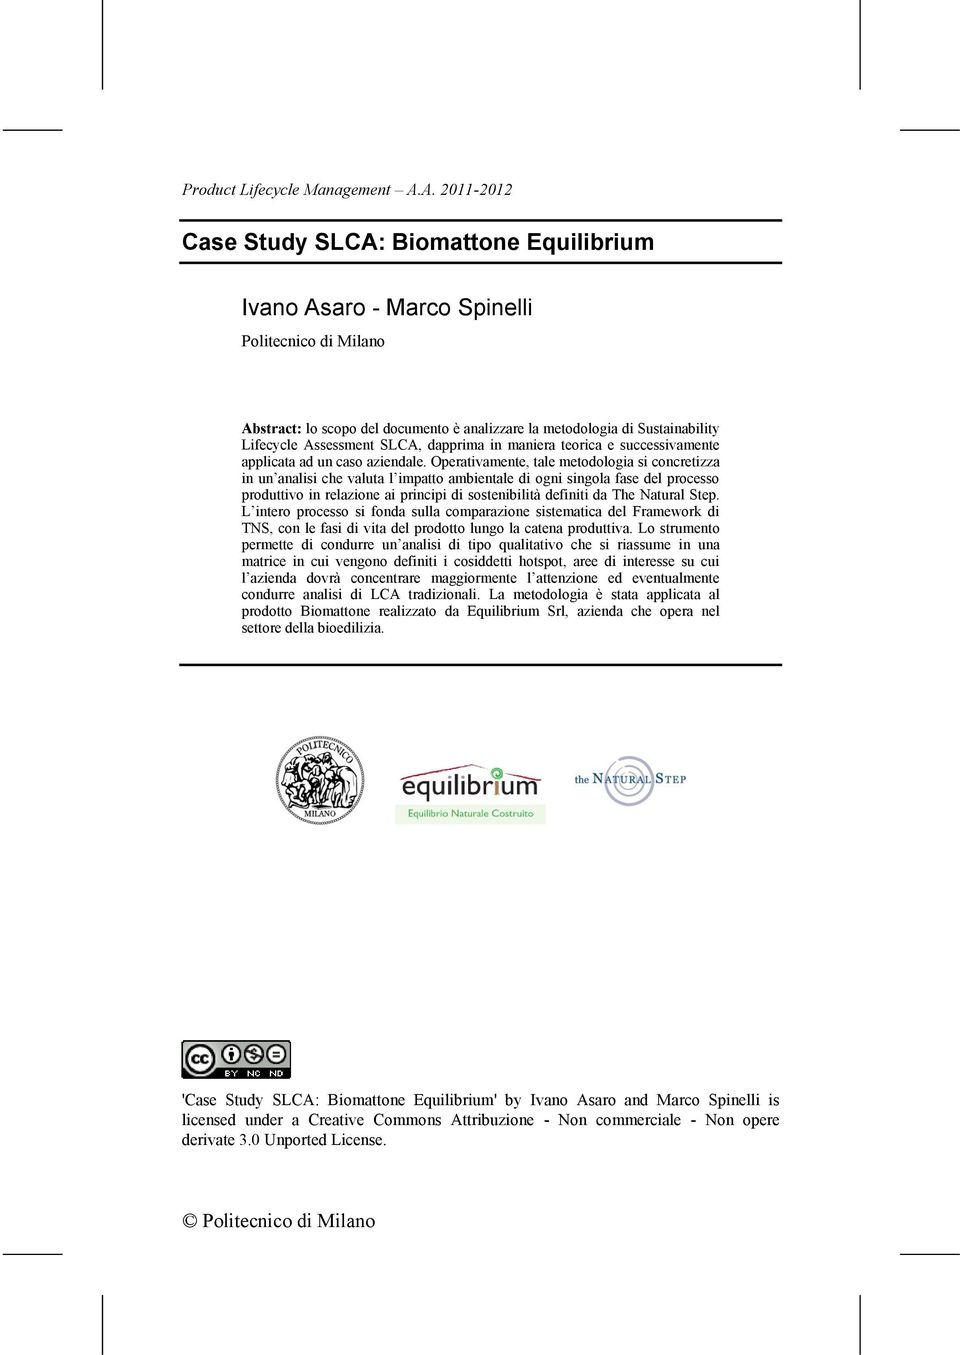 Assessment SLCA, dapprima in maniera teorica e successivamente applicata ad un caso aziendale.